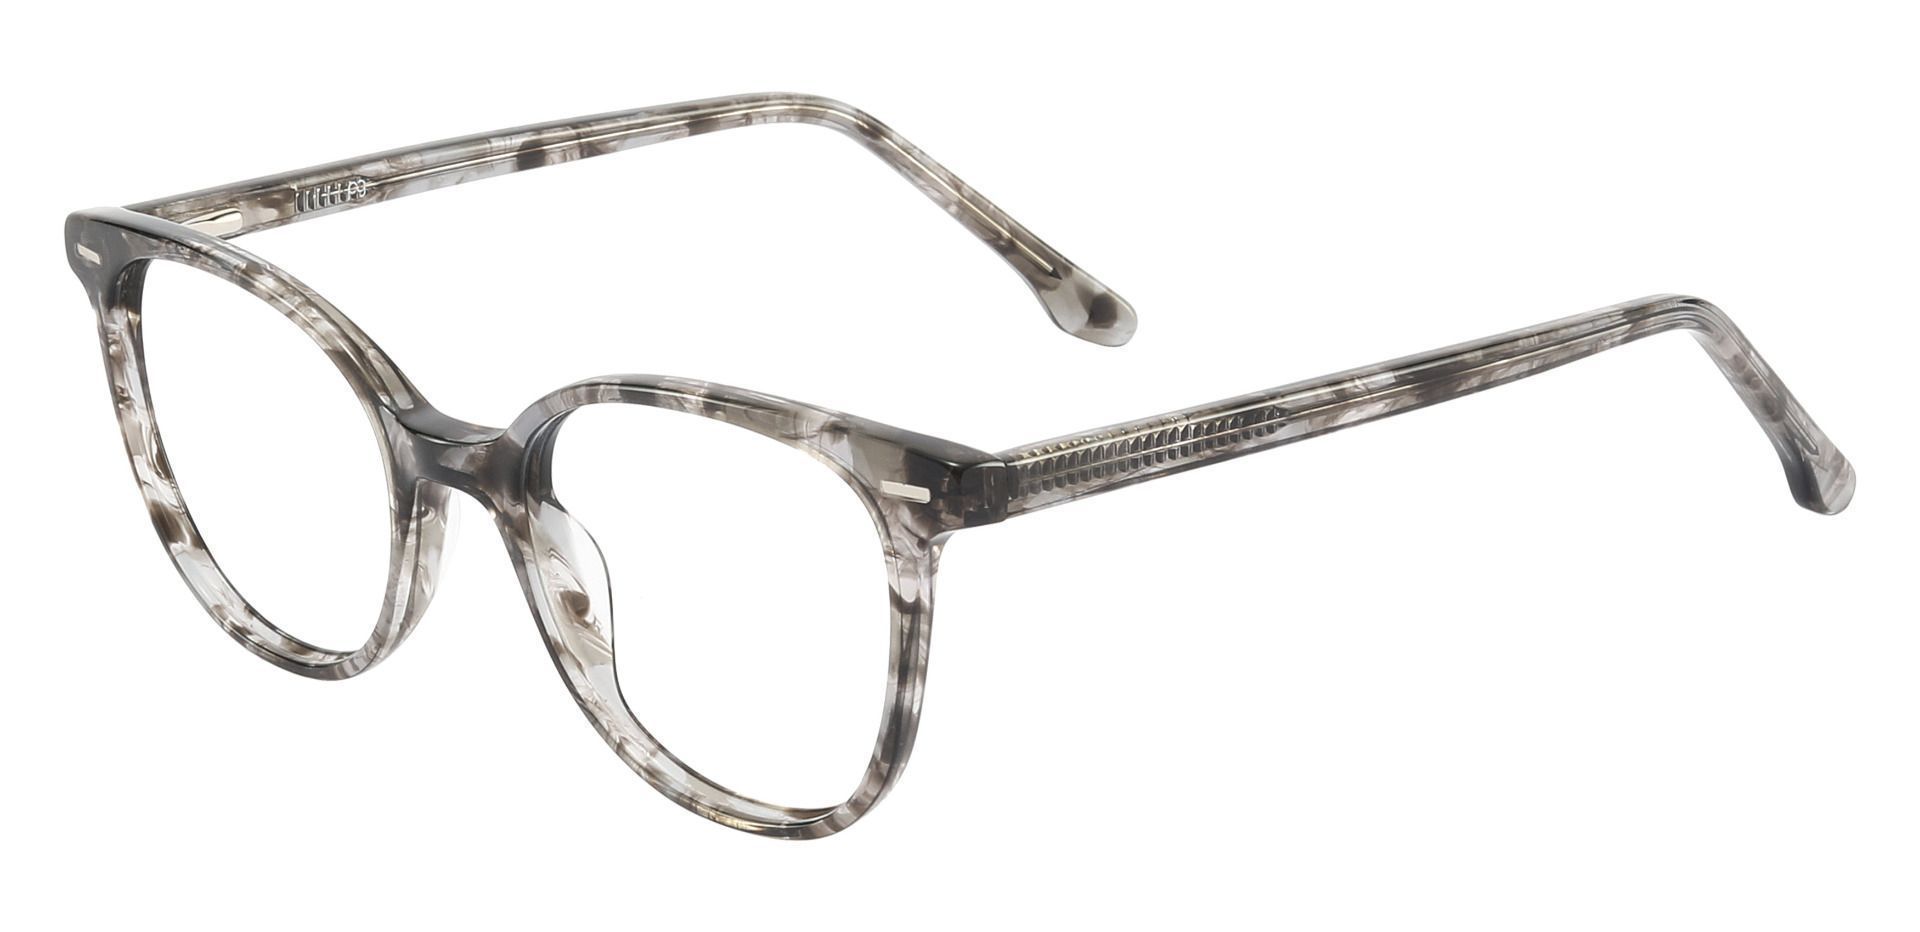 Chili Oval Prescription Glasses - Gray